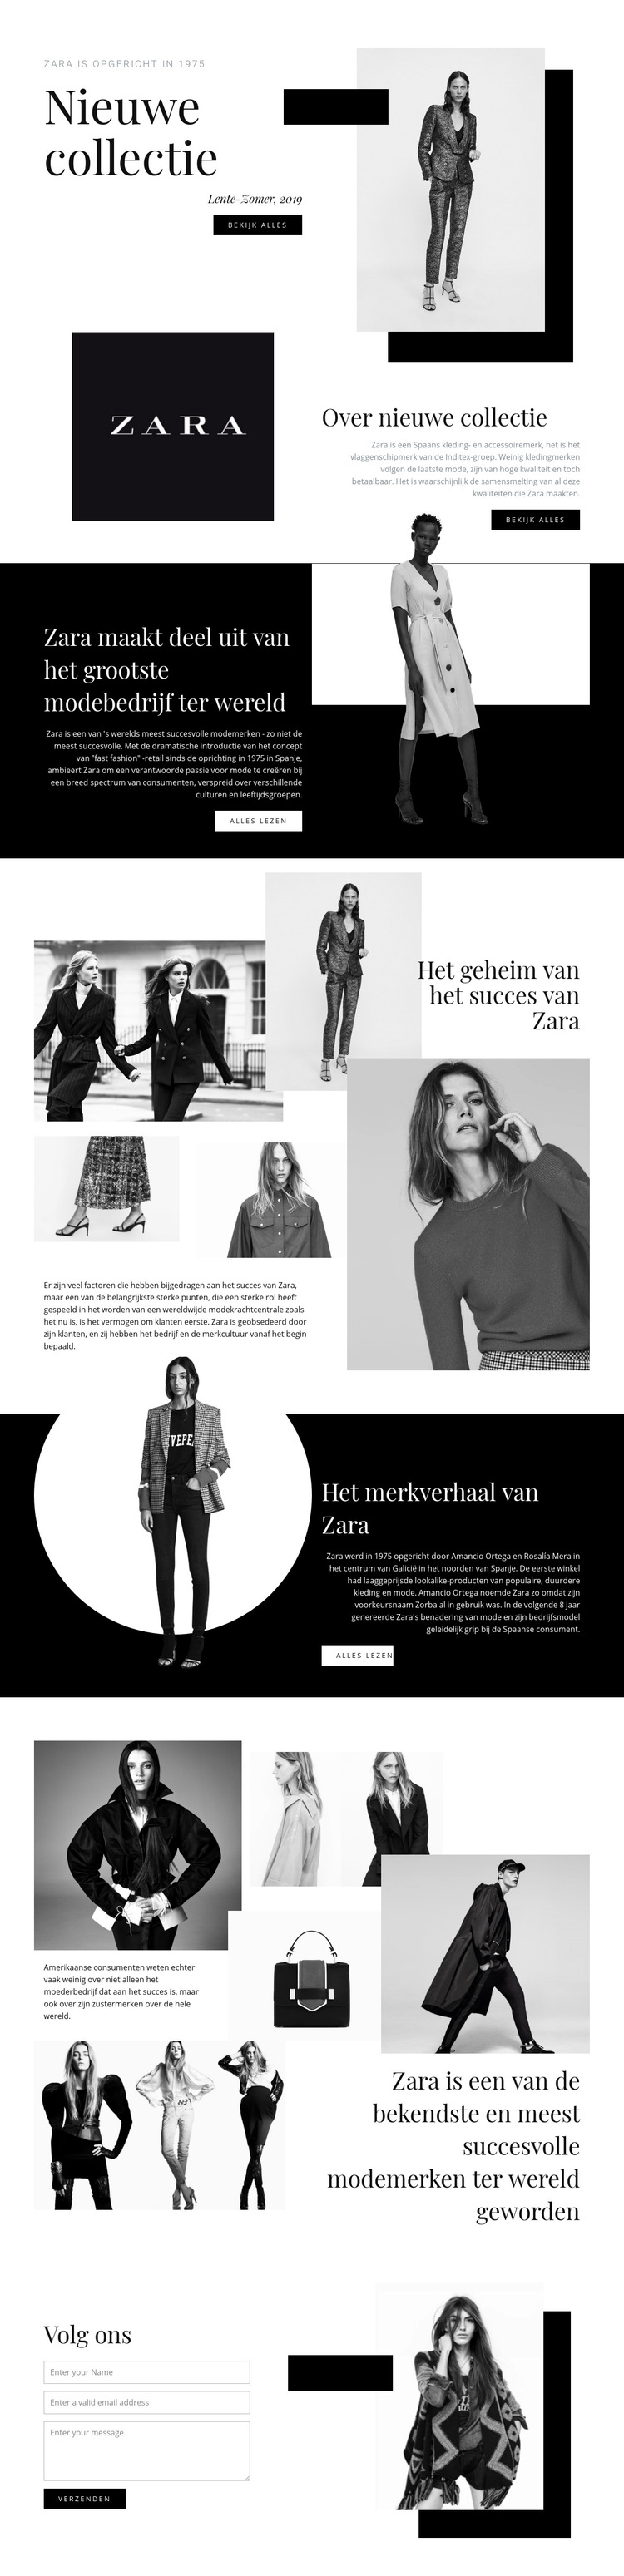 Zara collectie Website sjabloon